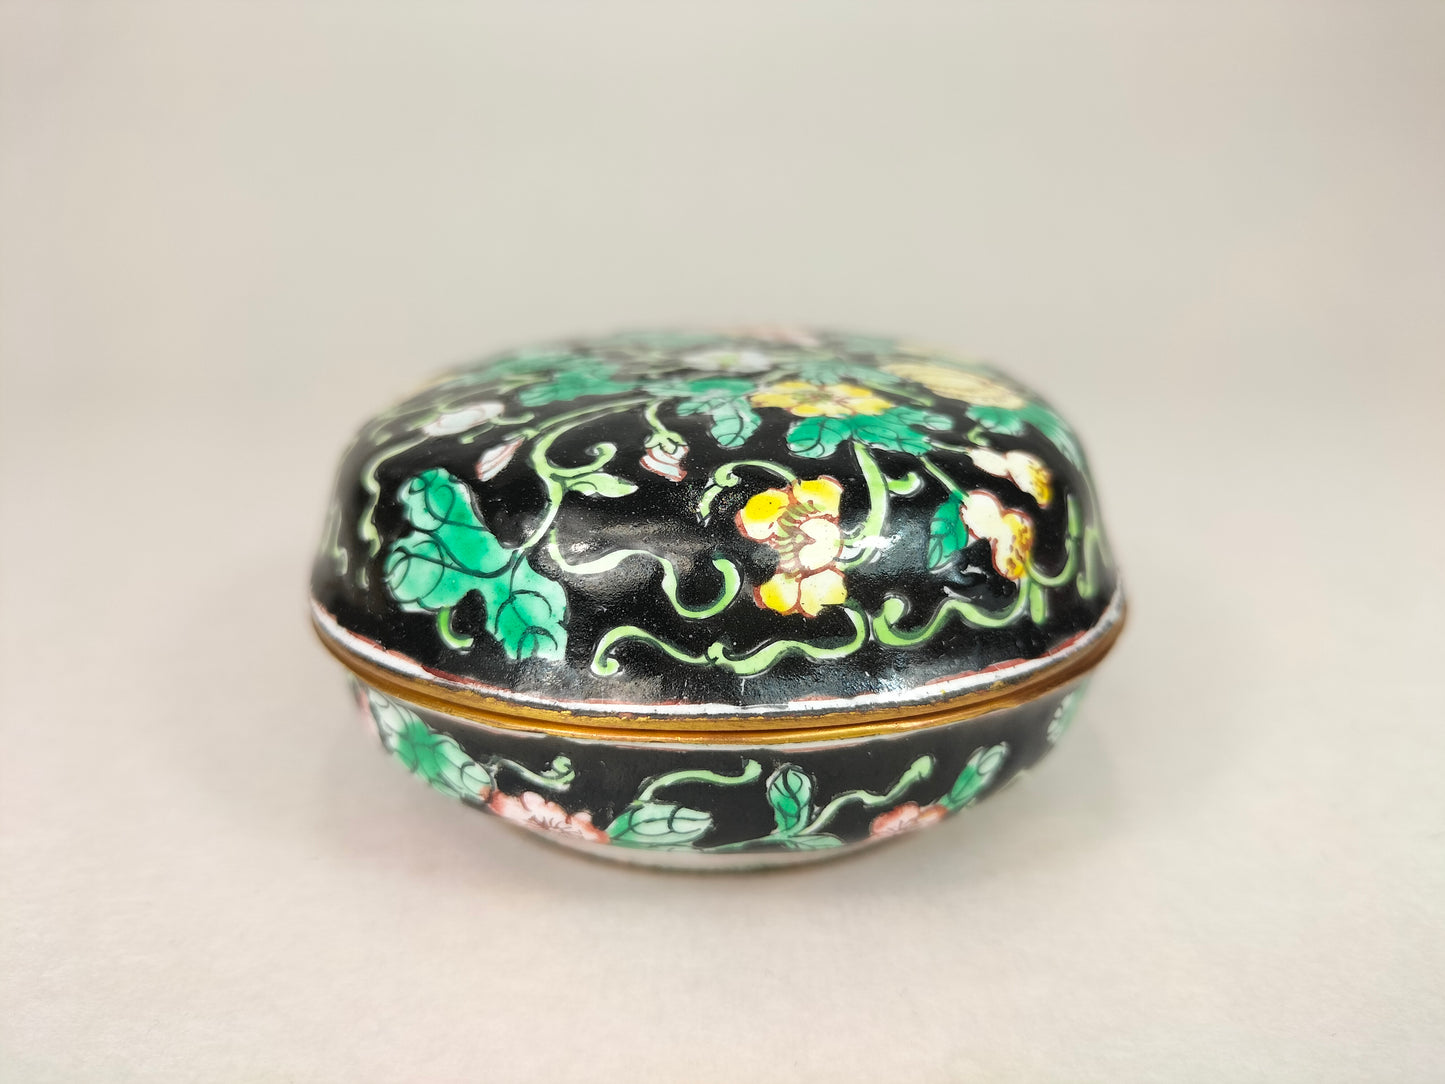 صندوق مغطى بمينا كانتون صيني مزين بالفراشات والزهور // منتصف القرن العشرين